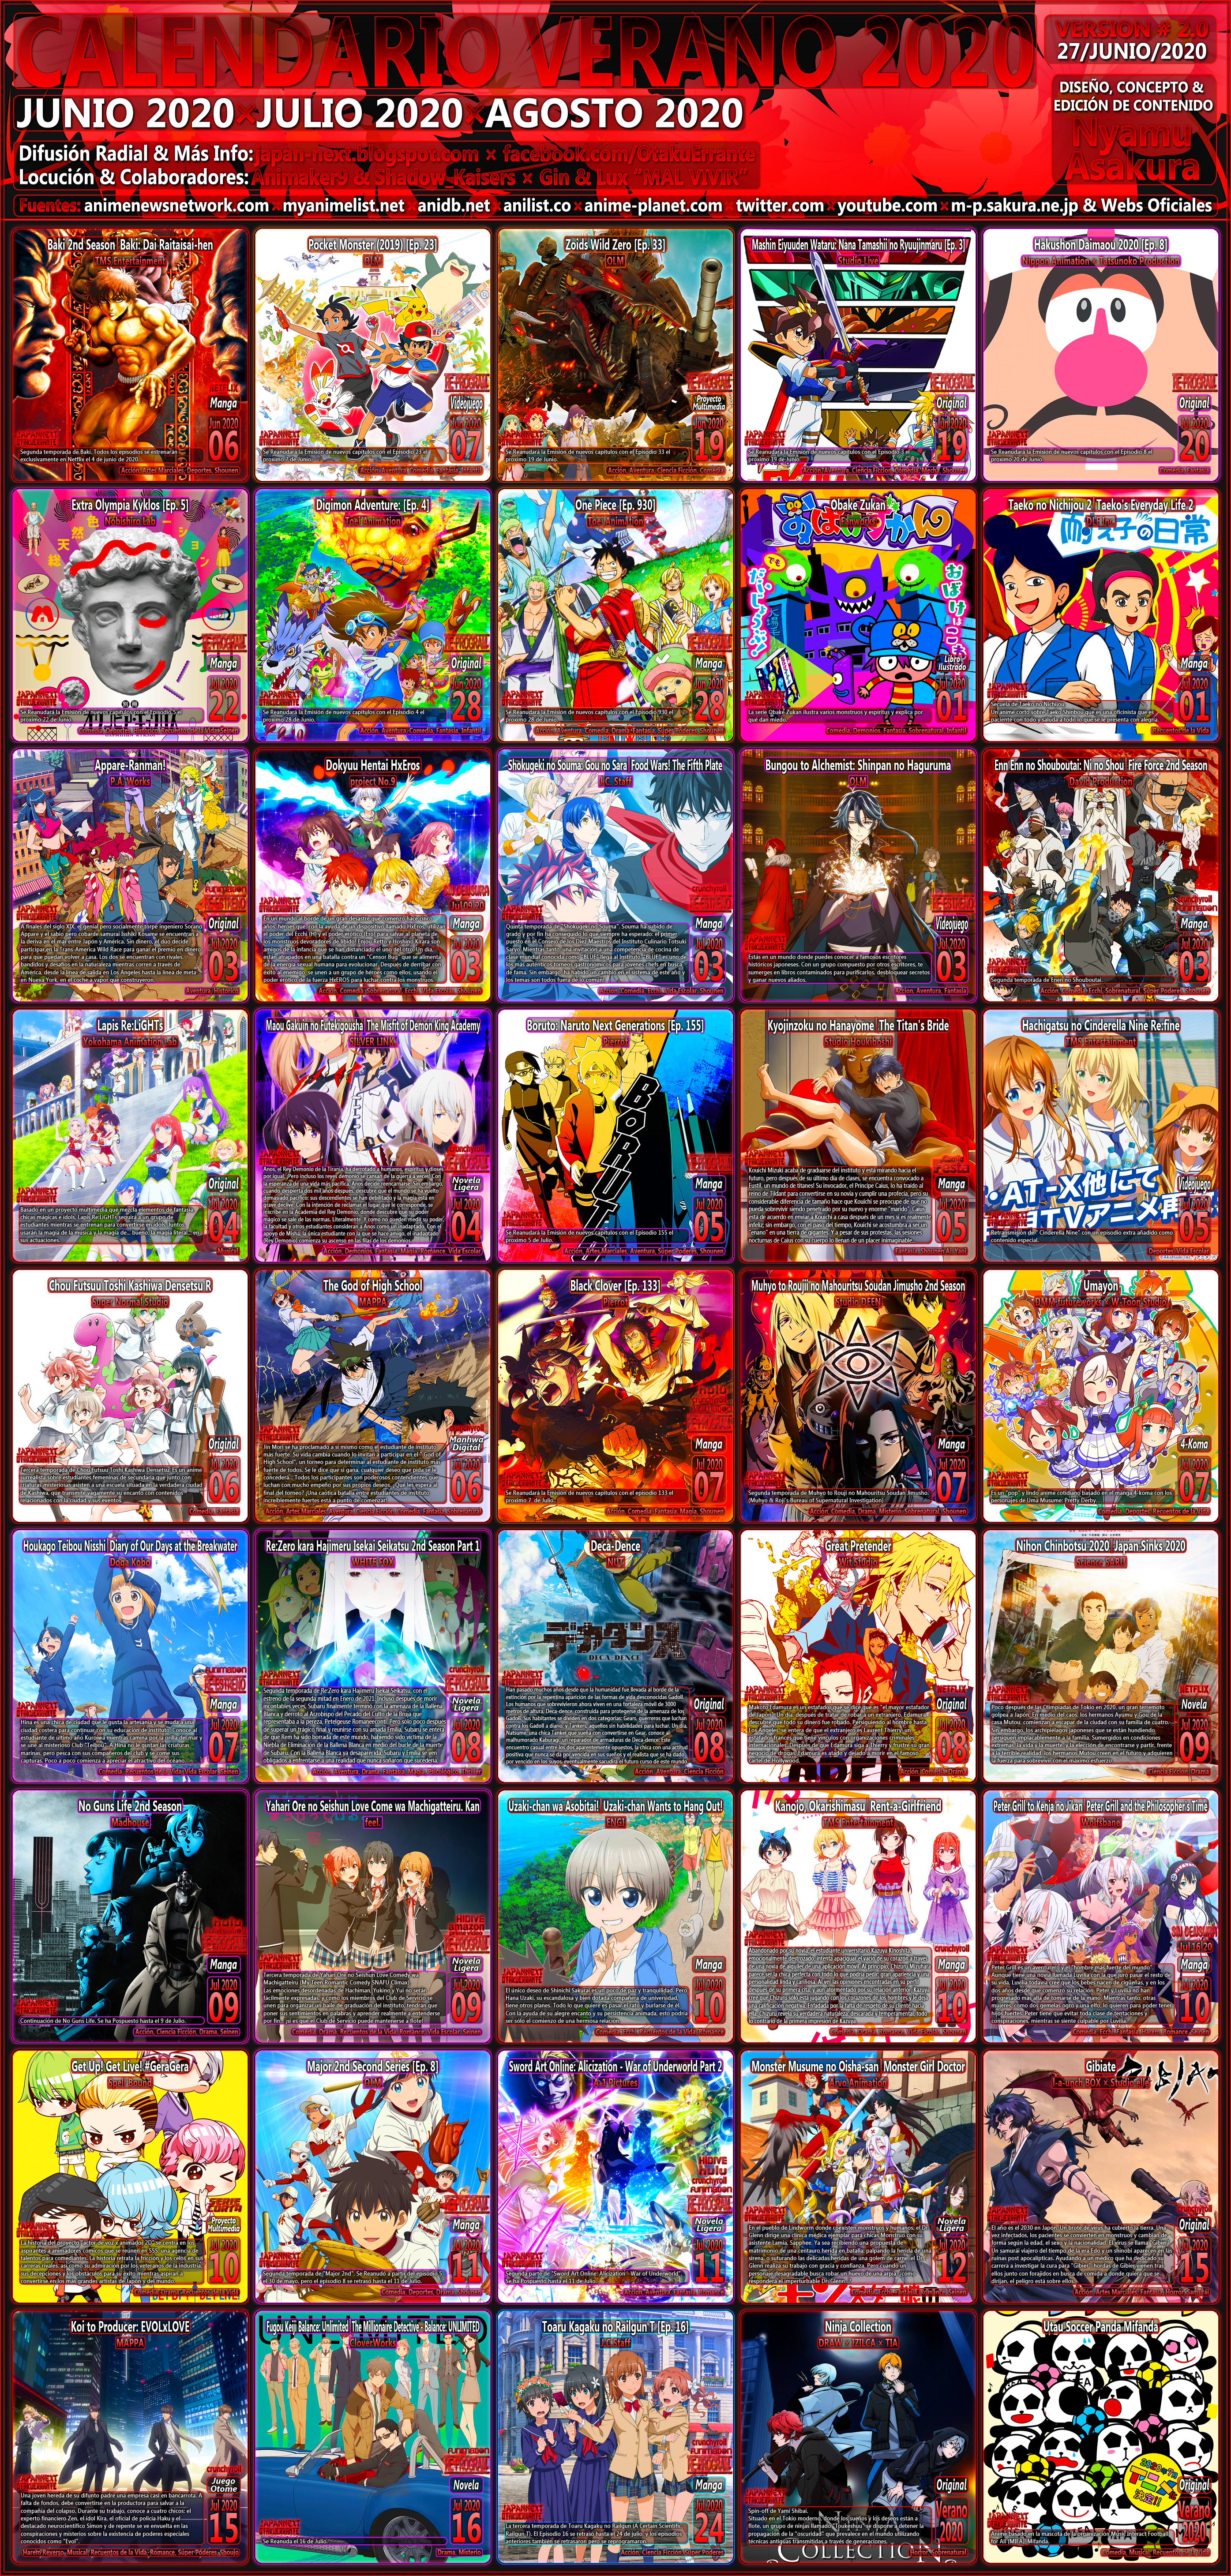 OtakuErrante] Calendario de Estrenos Anime Otoño 2020. V4.0